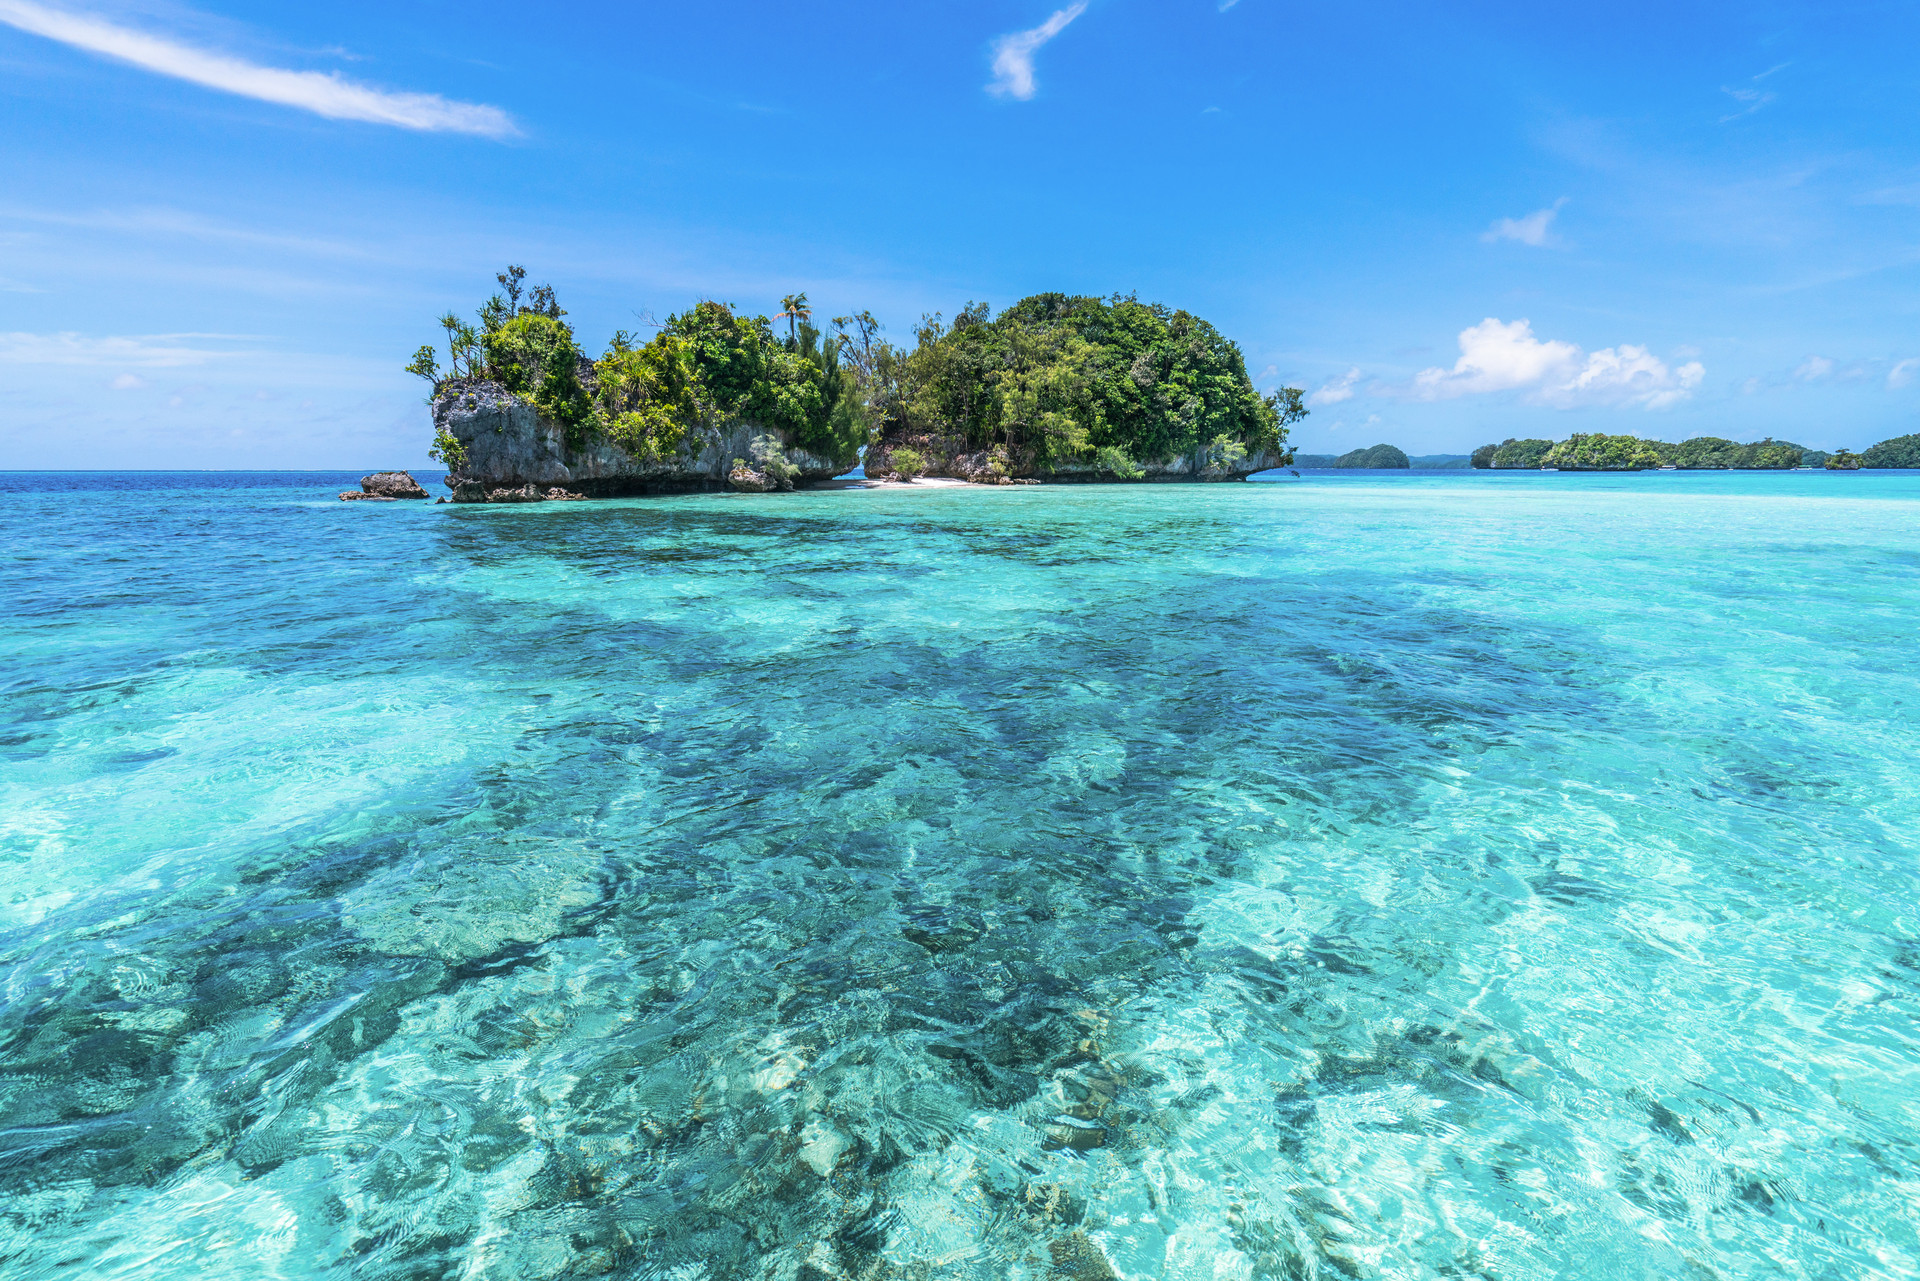 印尼巴厘岛累计确诊新冠超1.5万例 旅游业遭重创